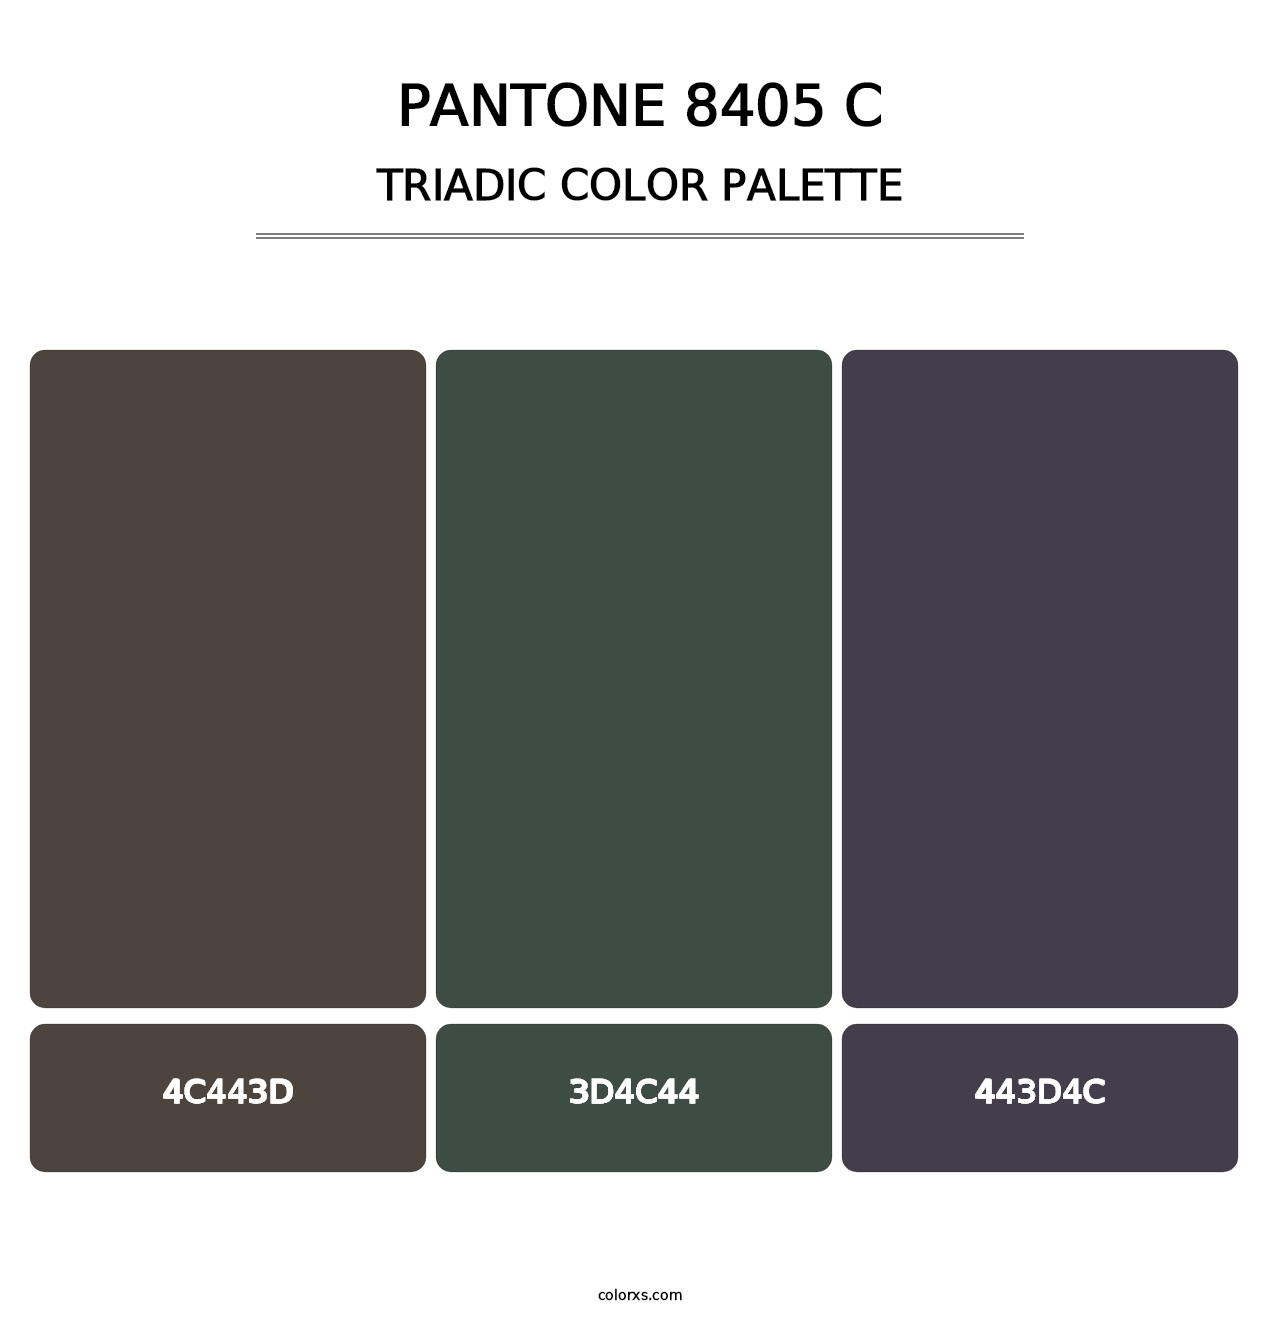 PANTONE 8405 C - Triadic Color Palette